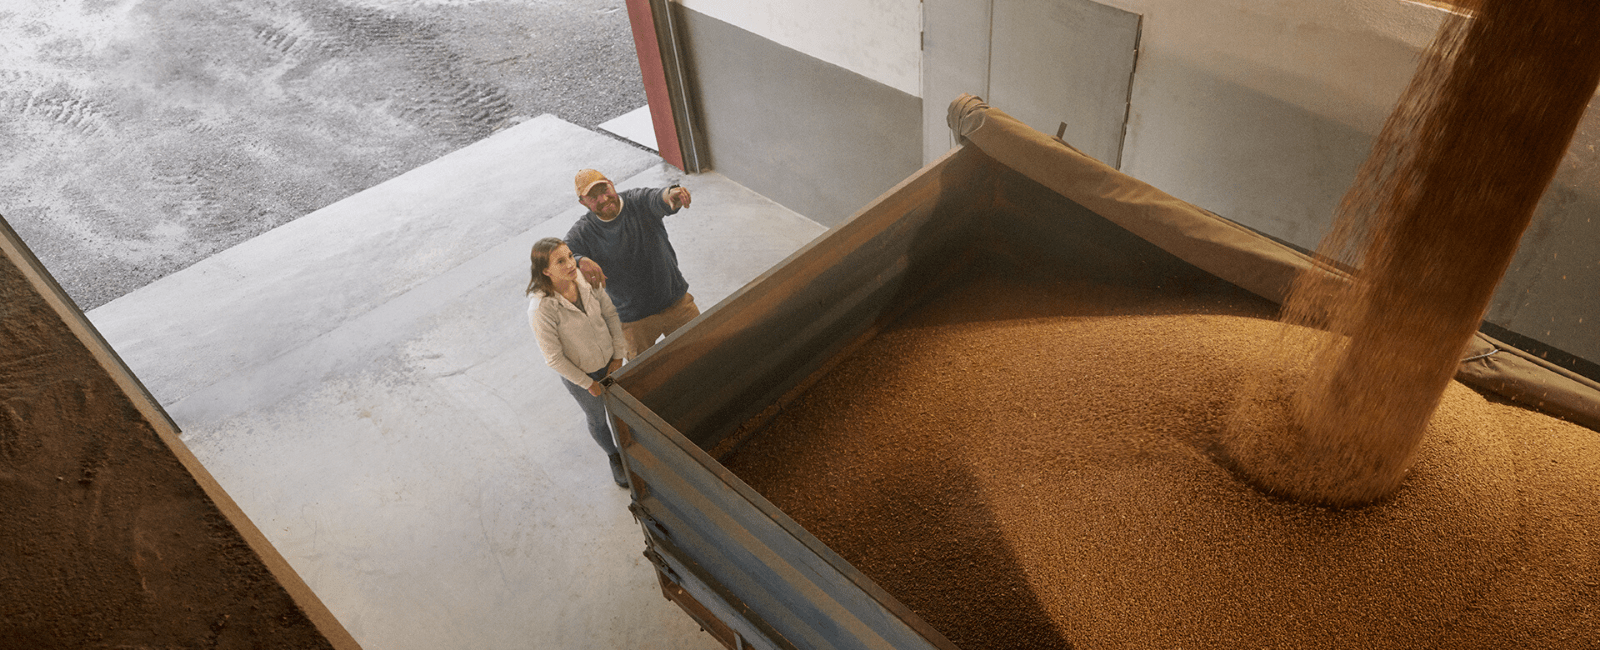 Un agriculteur et sa fille regardent leur récolte de blé